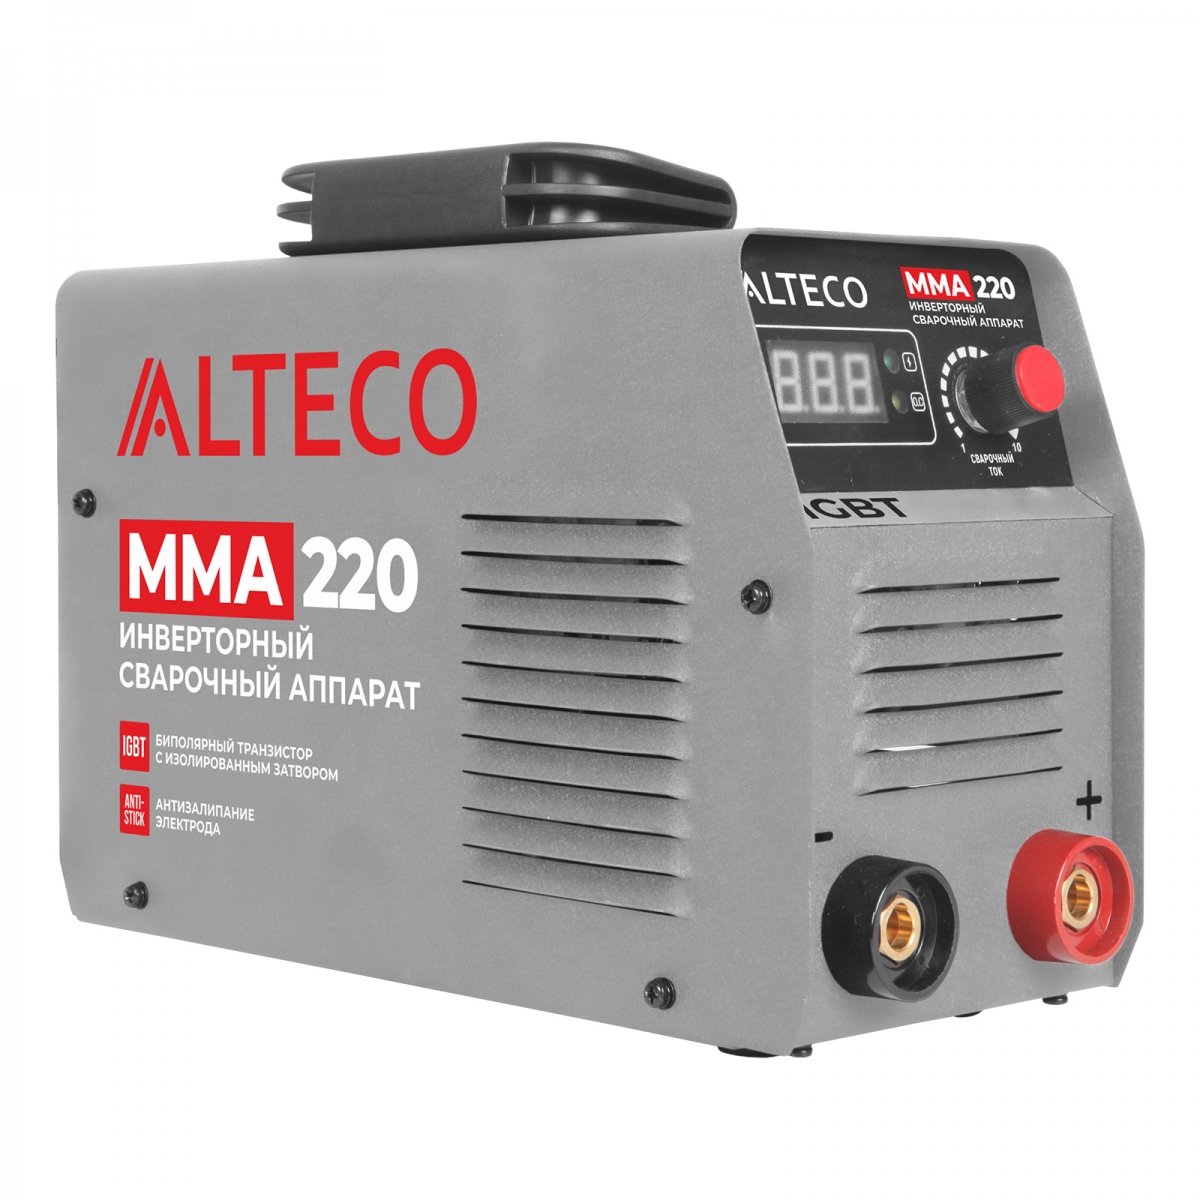 Сварочный аппарат ALTECO MMA 220, арт. 37054